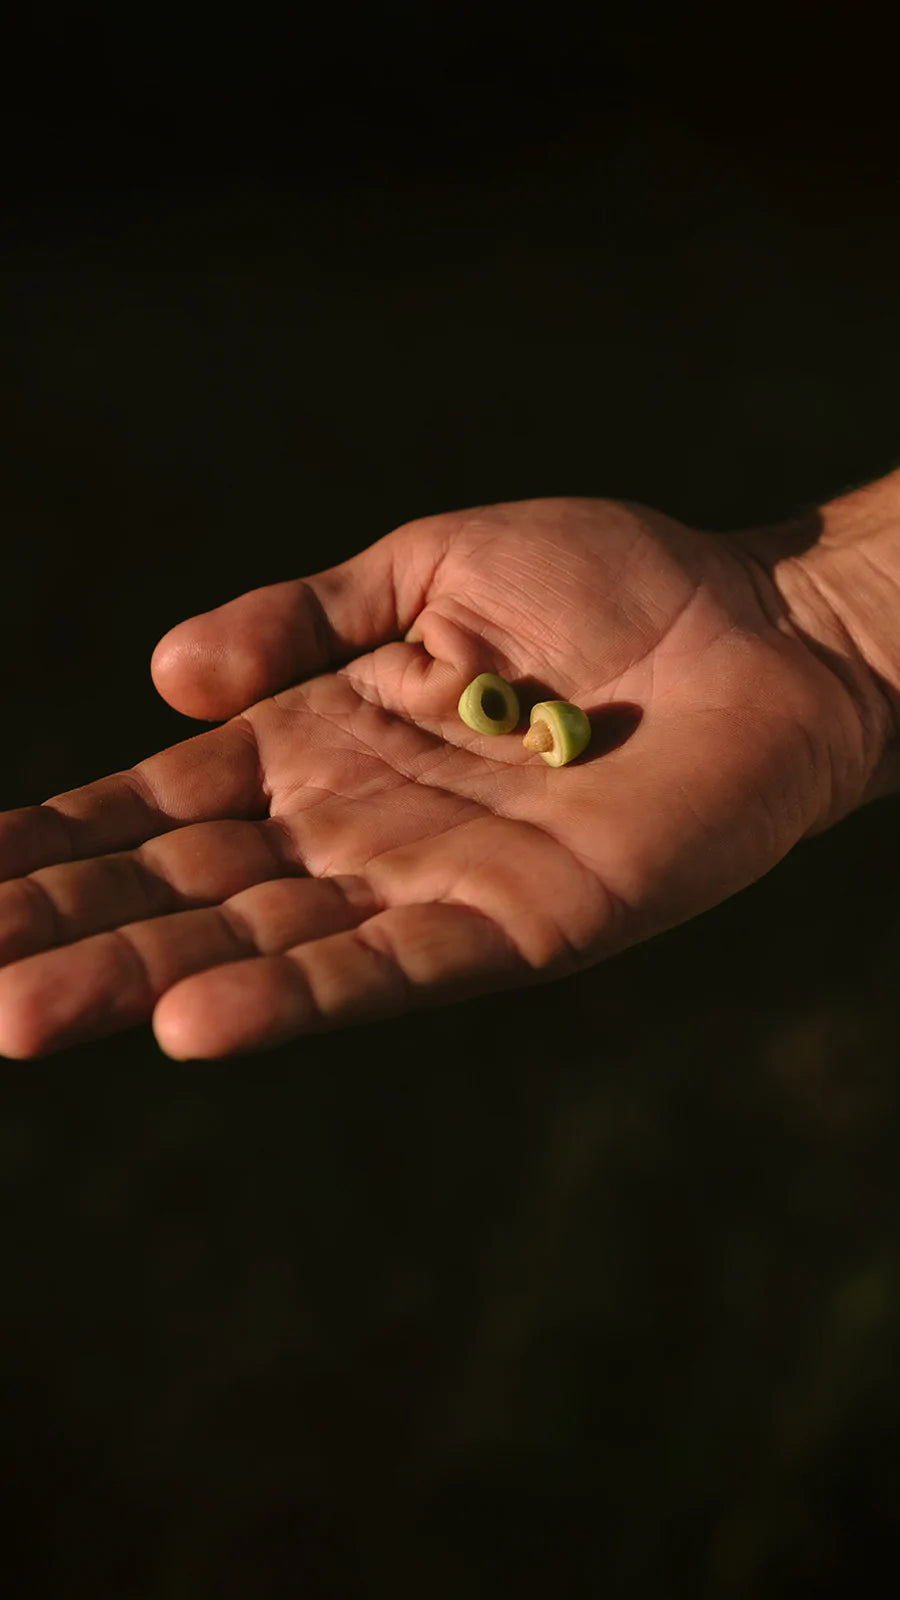 Azeites de oliva: conheça mitos e verdades sobre o produto